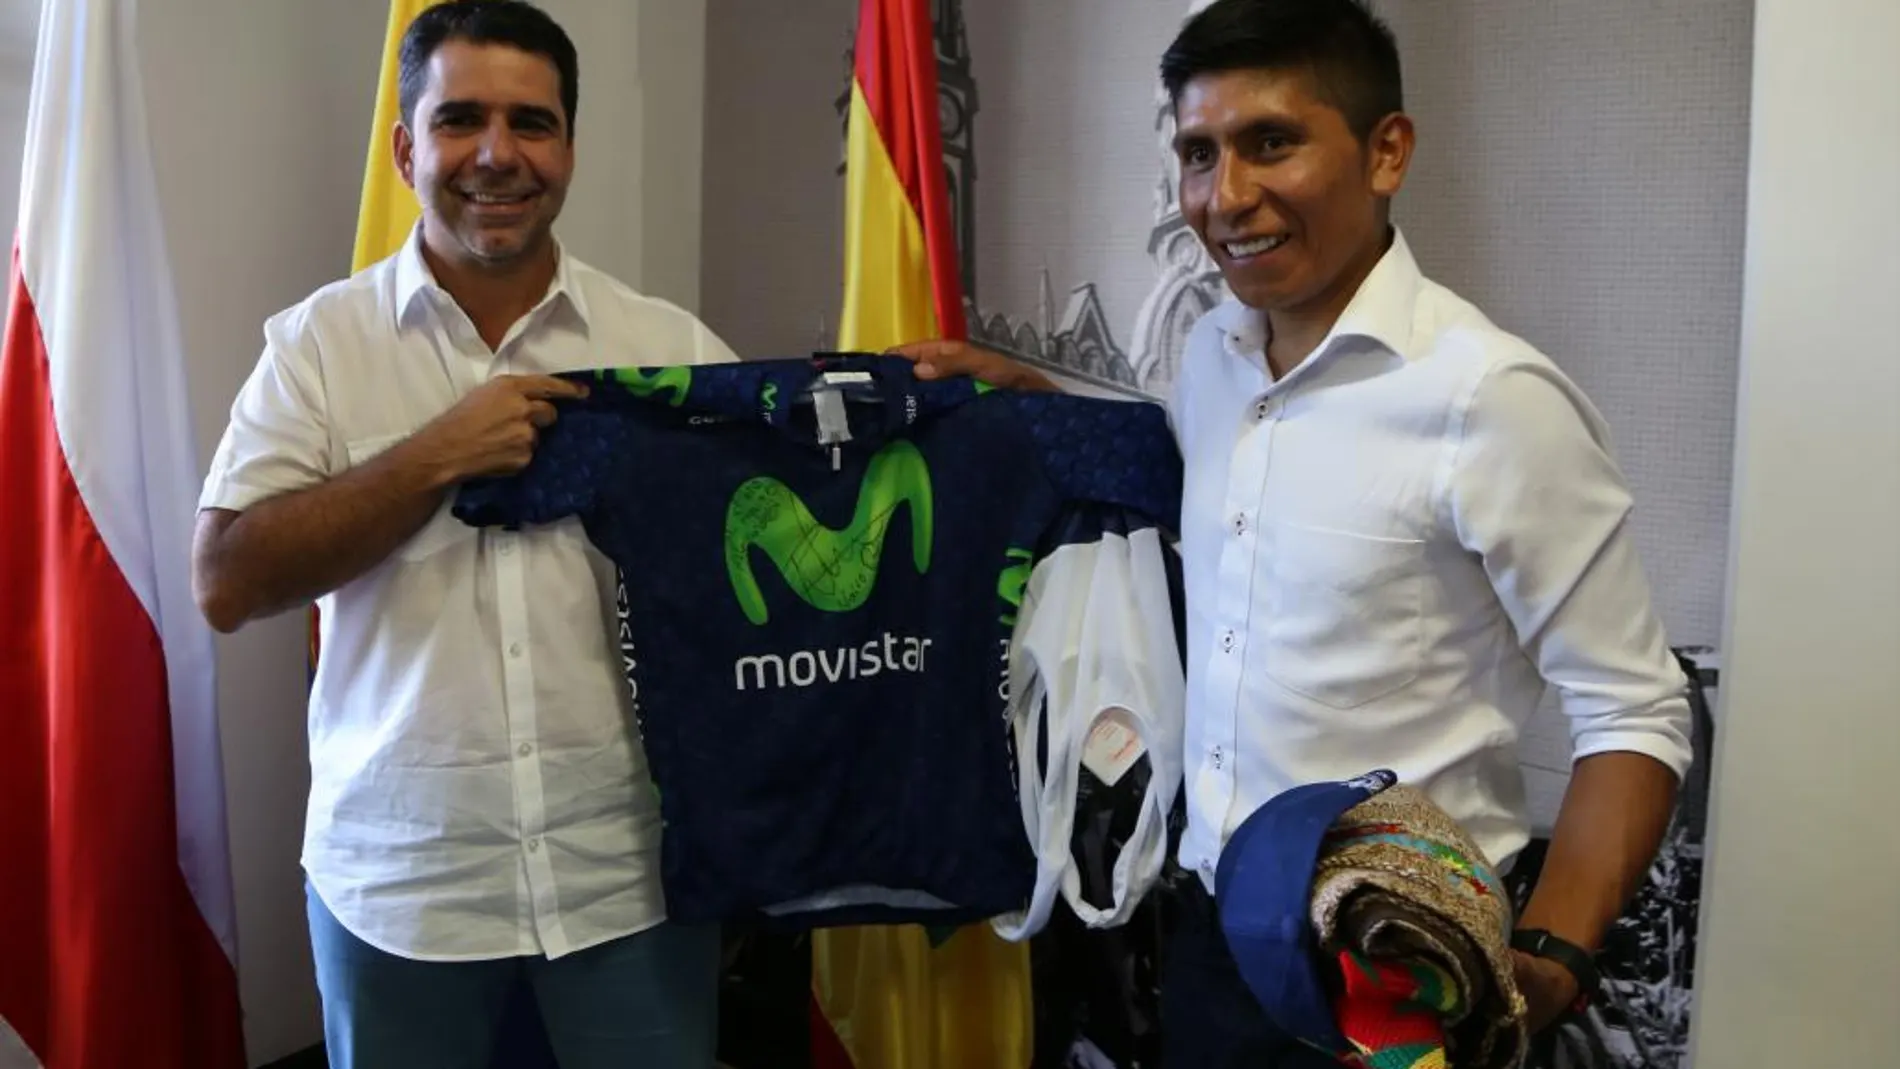 Fotografía cedida por la Alcaldía de Barranquilla que muestra al alcalde Alejandro Char Chaljub (i) y al ciclista Nairo Quintana (d) el jueves 15 de diciembre de 2016, en Barranquilla (Colombia)